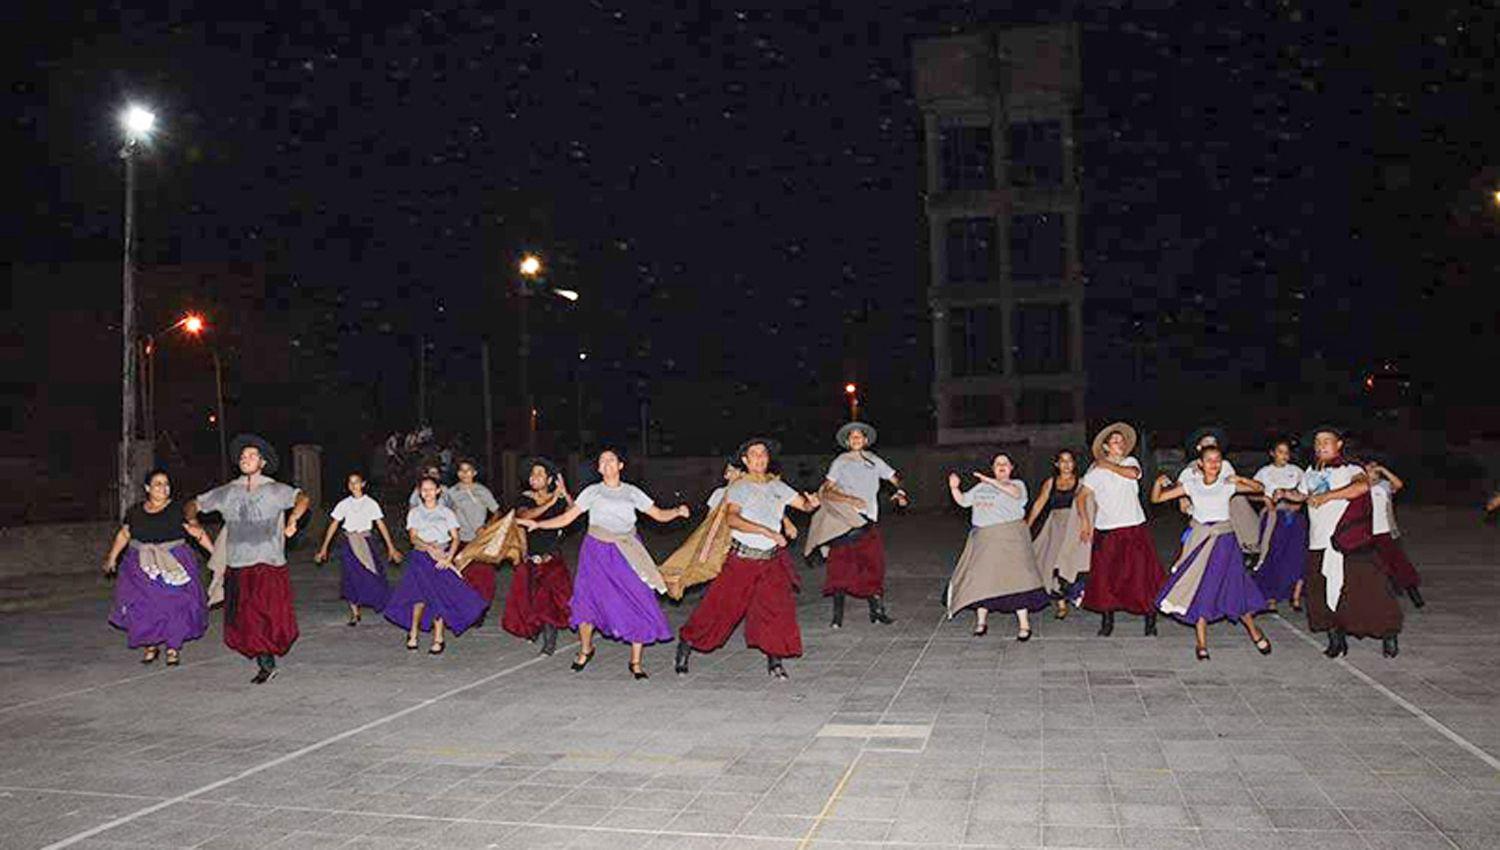 Esta agrupación bandeña de danzas folclóricas participar� por primera vez en el Festival de La Salamanca